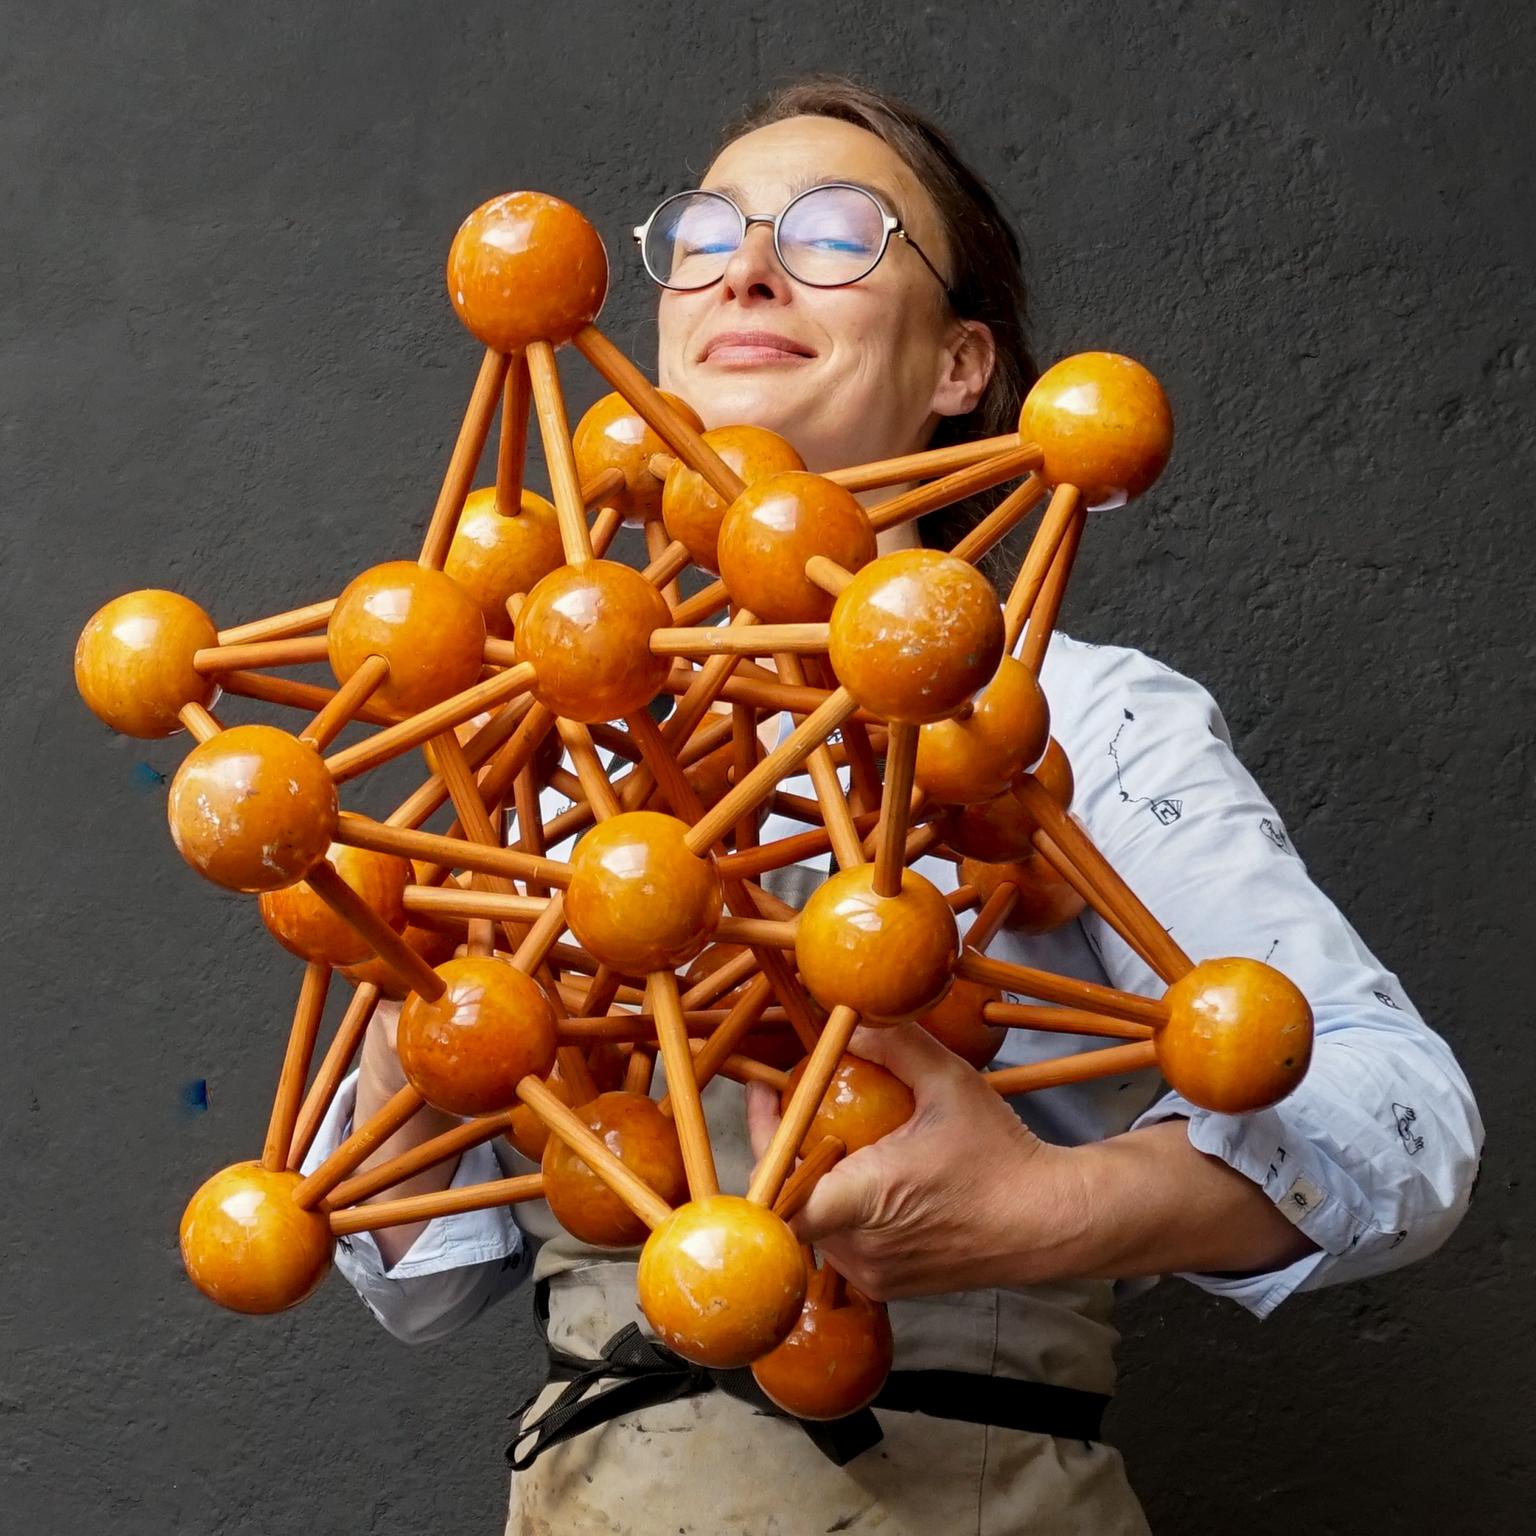 Sehr dekoratives, großes, lackiertes Holzmodell eines Moleküls mit Atomen aus den 1950er Jahren, das wahrscheinlich einst im naturwissenschaftlichen Unterricht verwendet wurde.
Dieses große Molekülmodell besteht aus 32 Atomen (lackierte Holzkugeln),